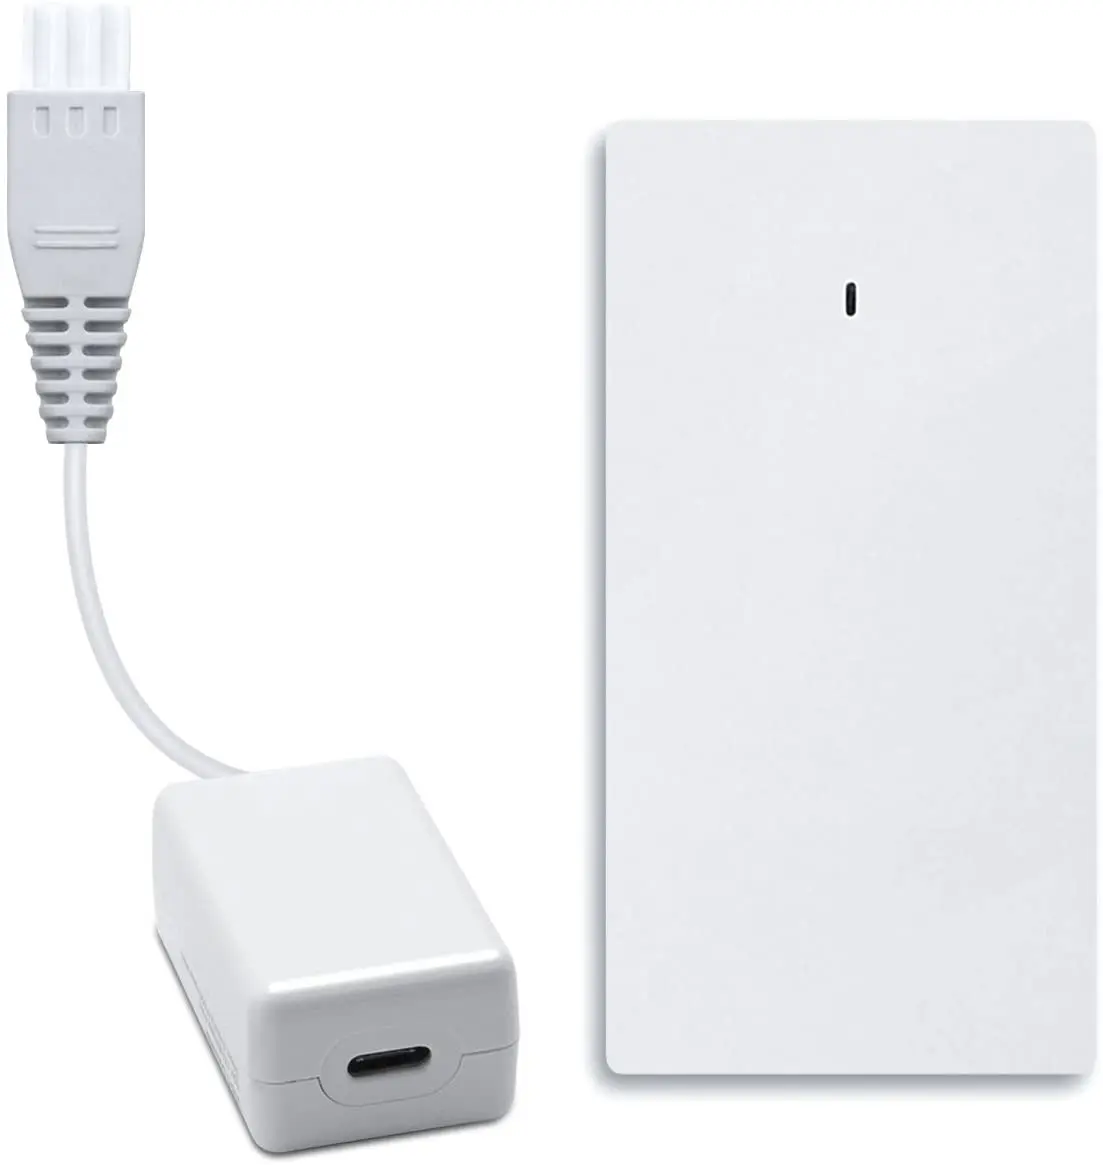 macbook 2015 charger best buy